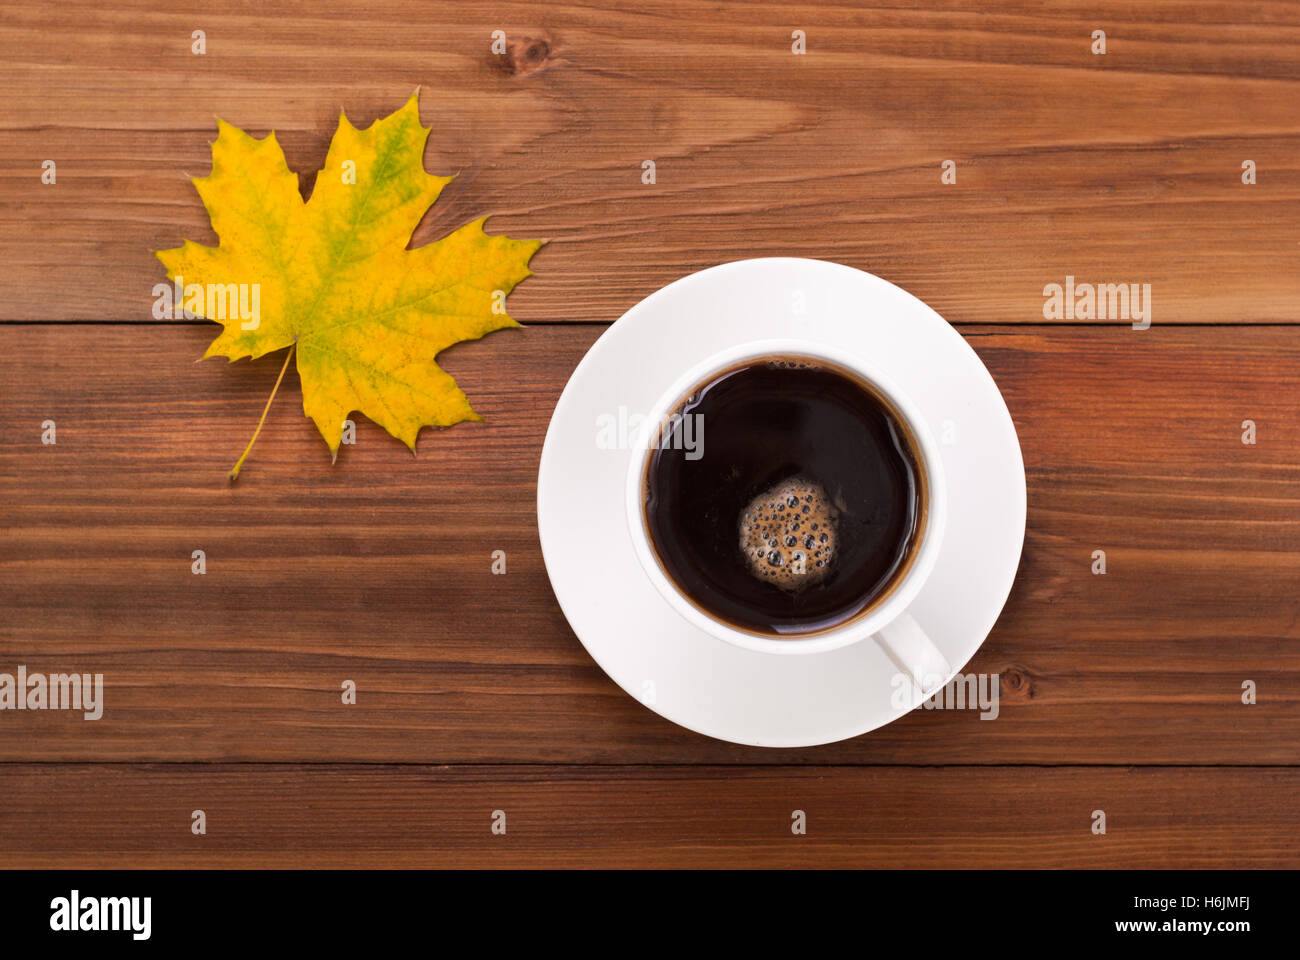 Tasse Kaffee und gelbe Ahornblatt auf einem hölzernen Hintergrund. Stockfoto